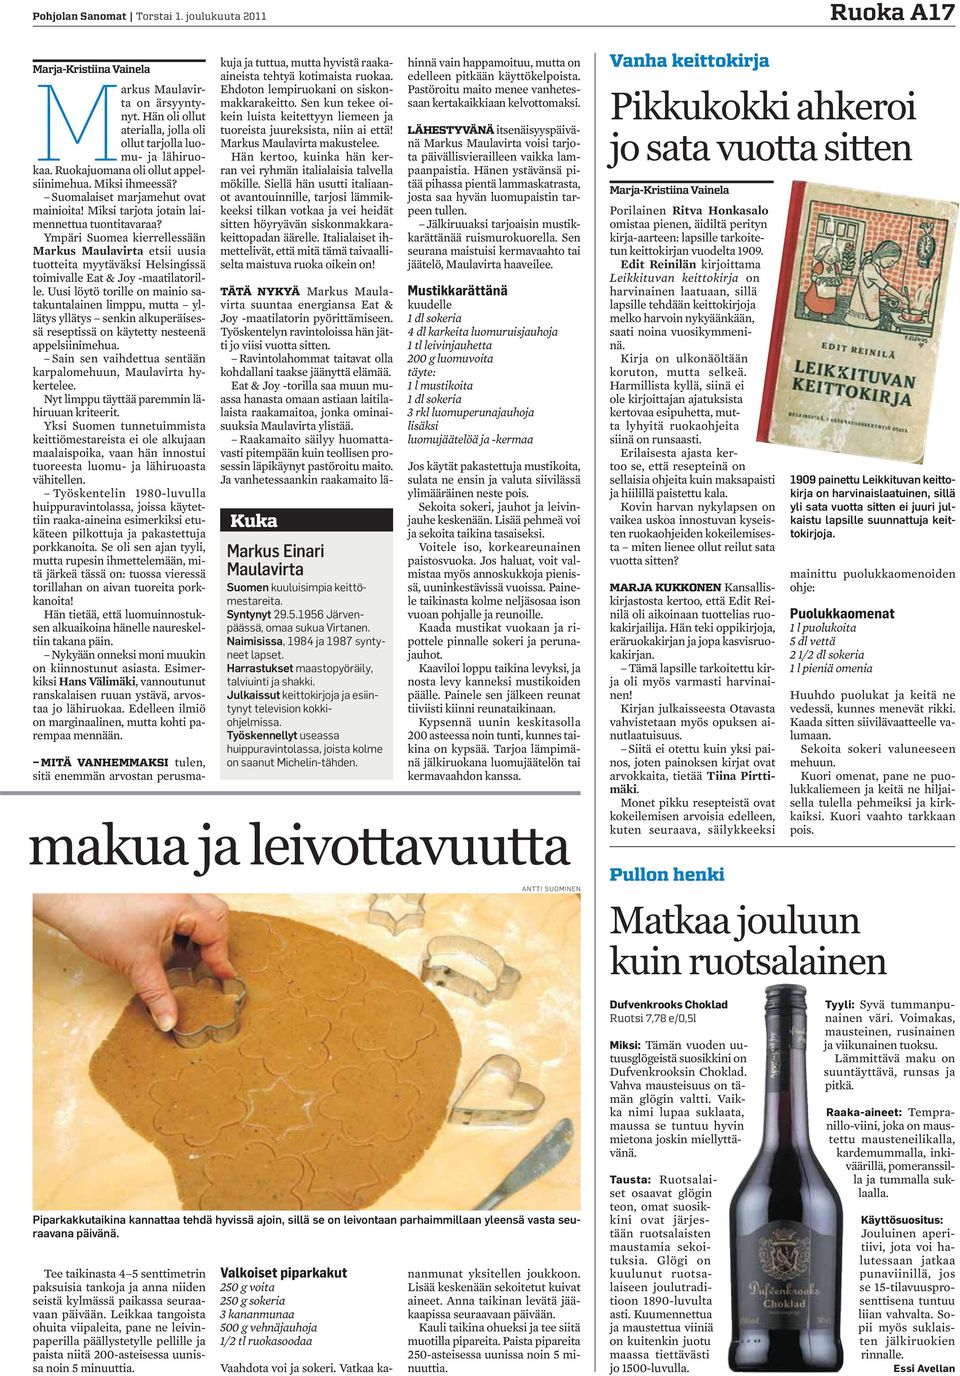 Ympäri Suomea kierrellessään Markus Maulavirta etsii uusia tuotteita myytäväksi Helsingissä toimivalle Eat & Joy -maatilatorille.